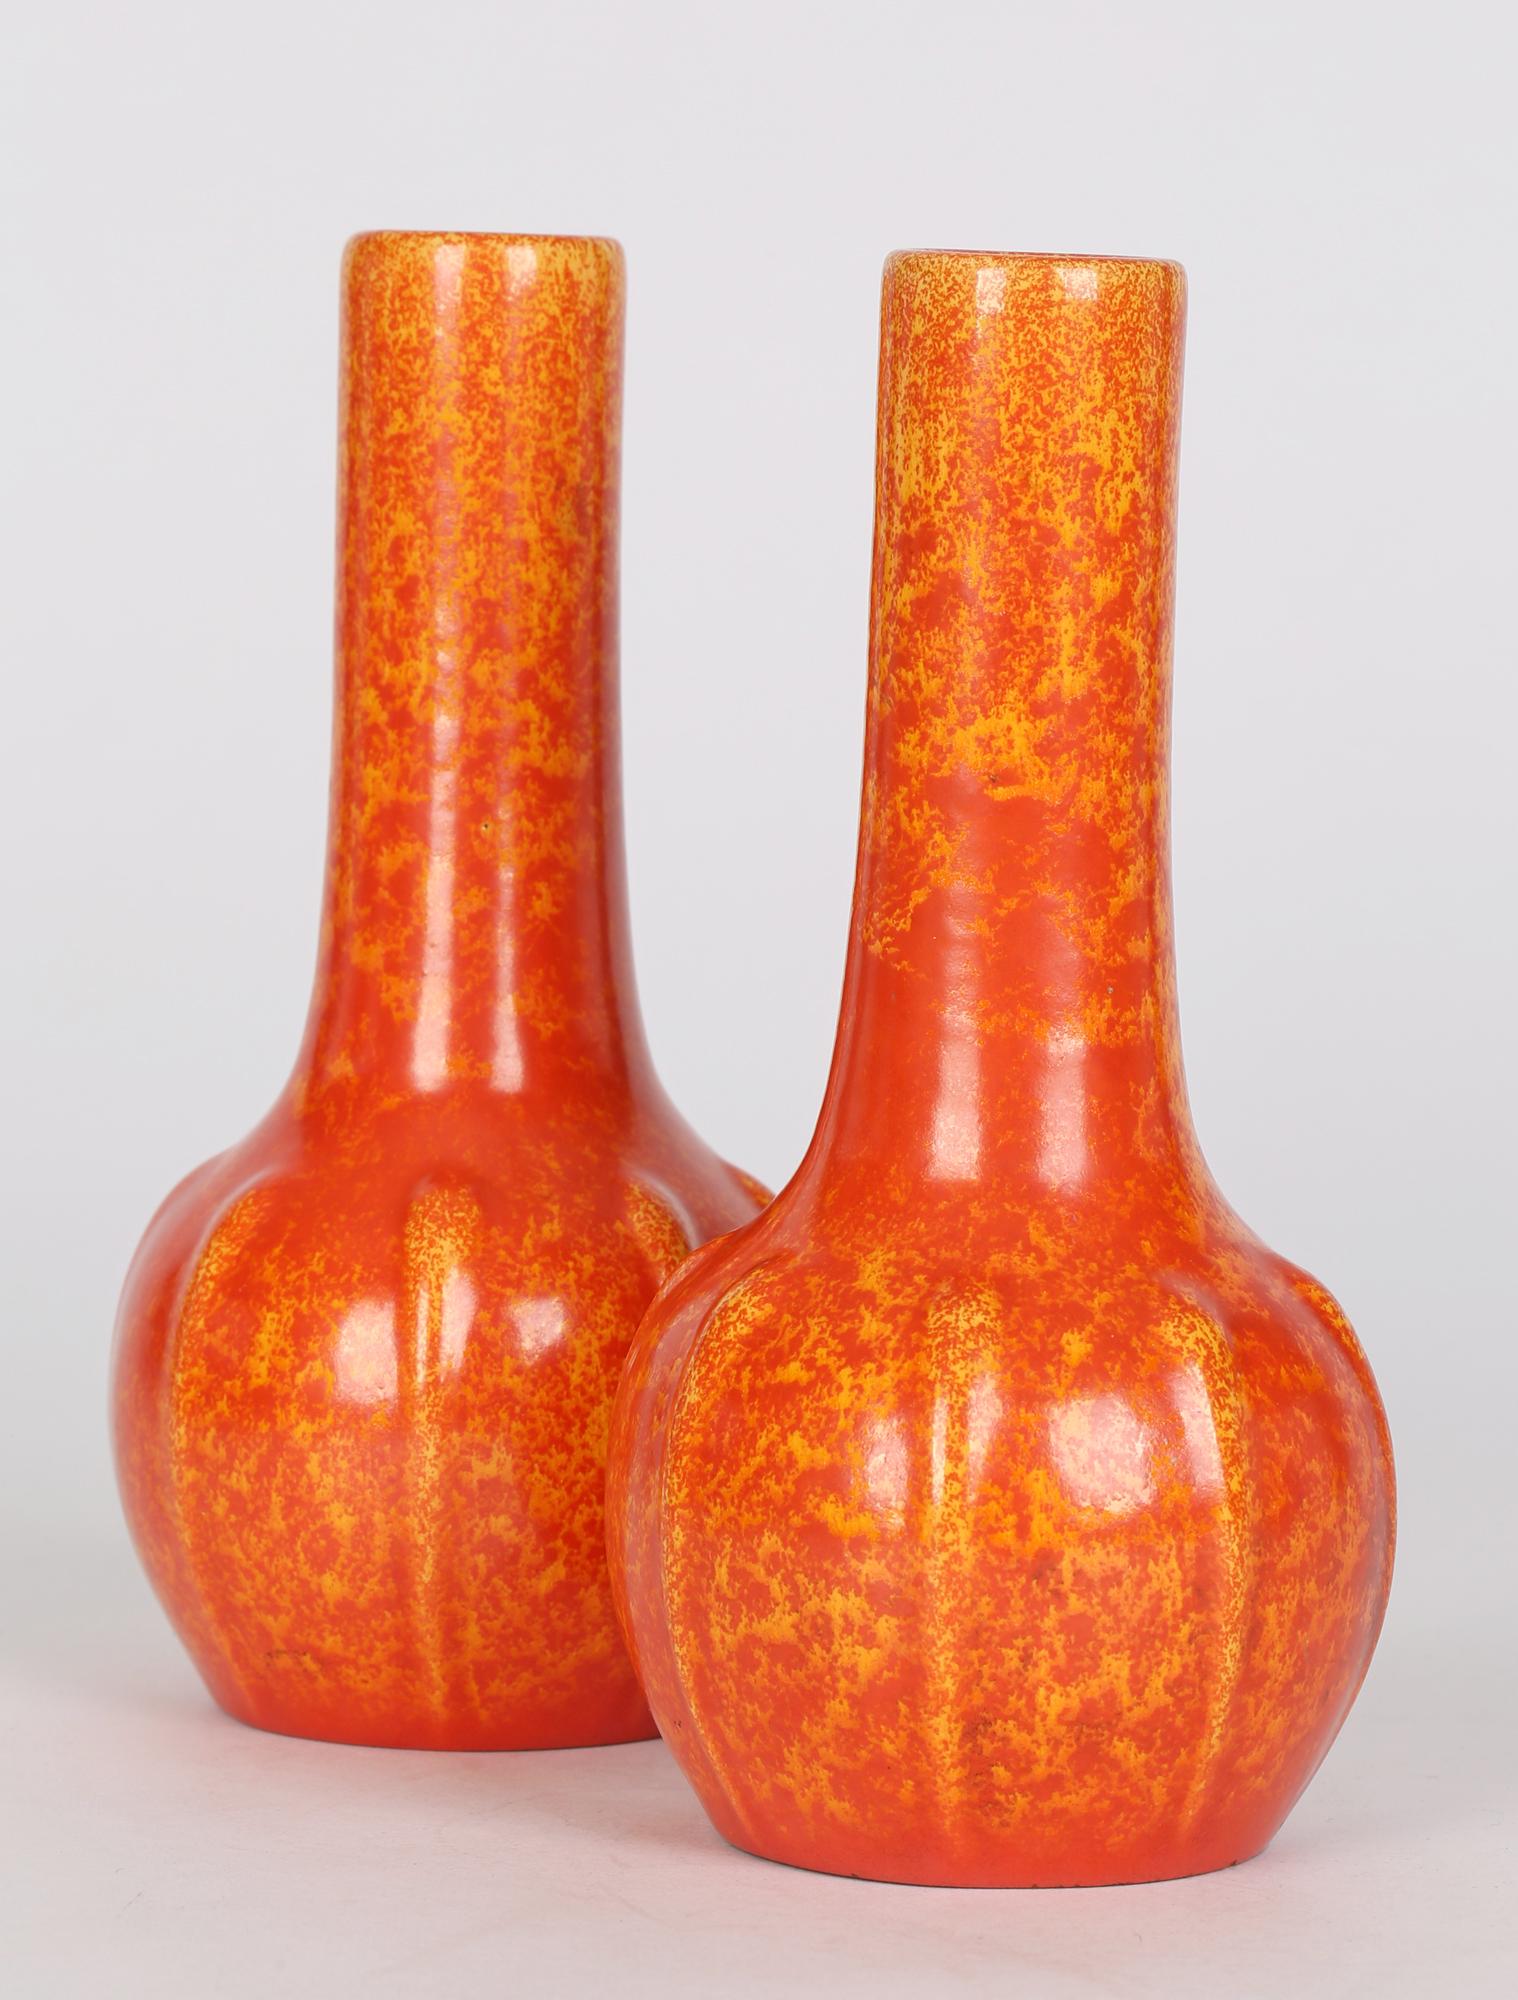 Pilkington Pair Art Deco Orange Vermilion Glazed Art Pottery Vases 4